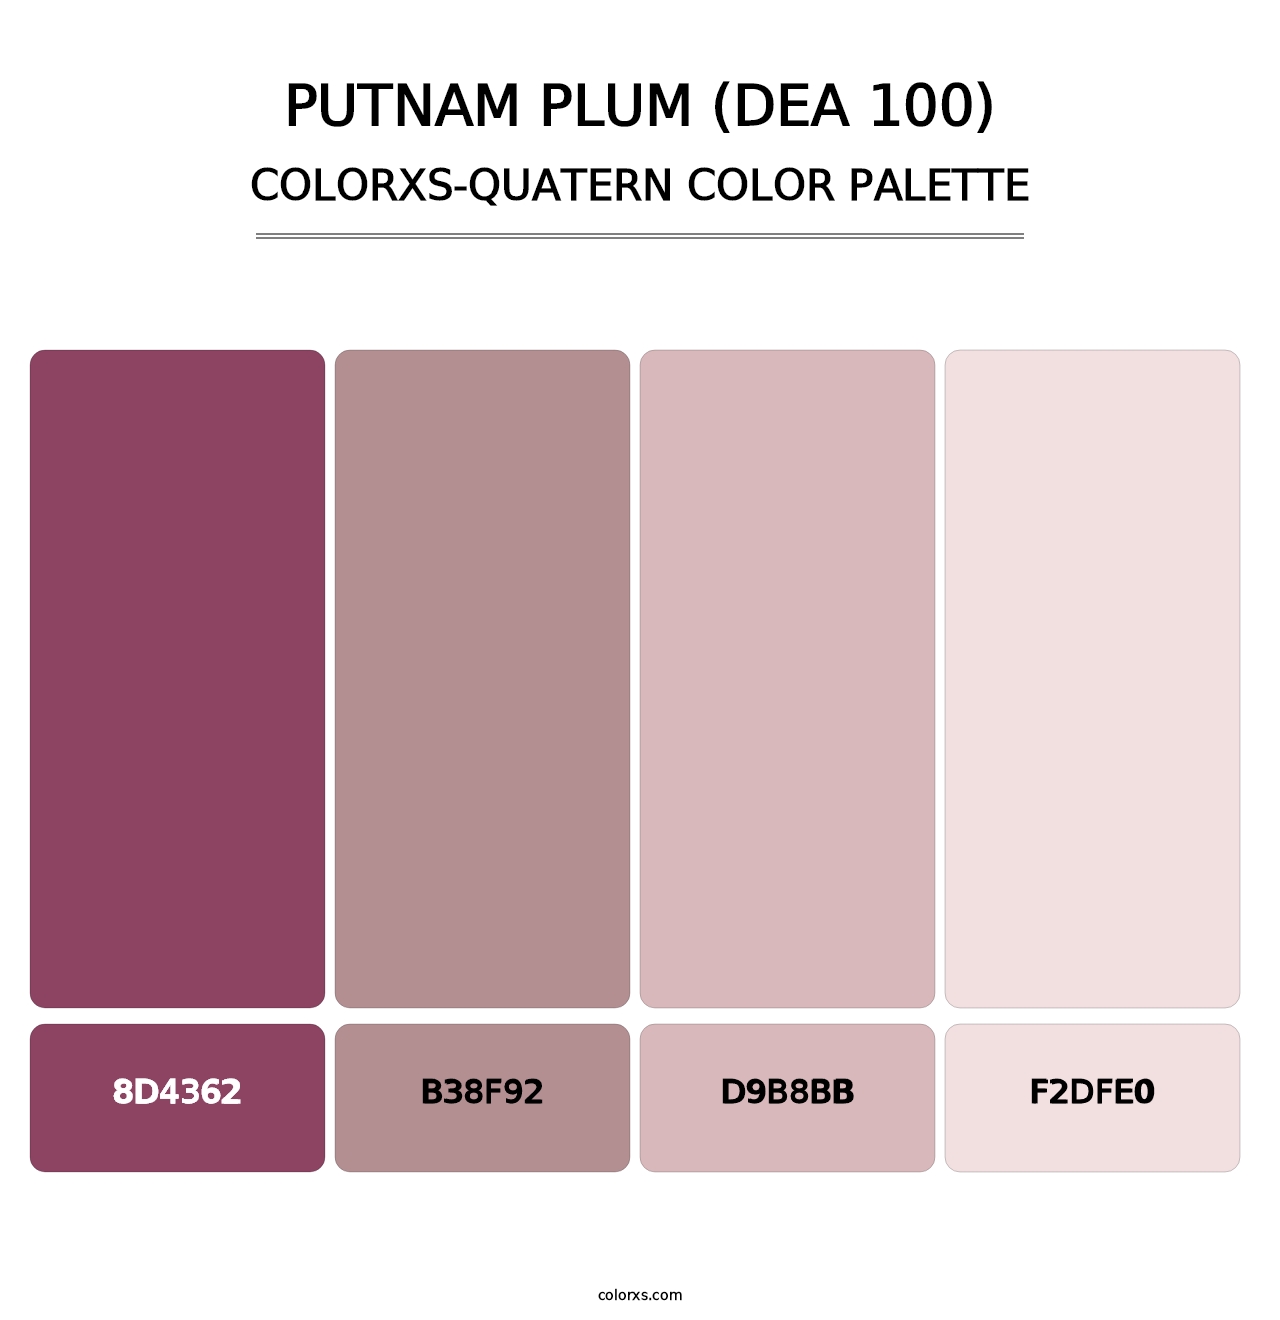 Putnam Plum (DEA 100) - Colorxs Quatern Palette